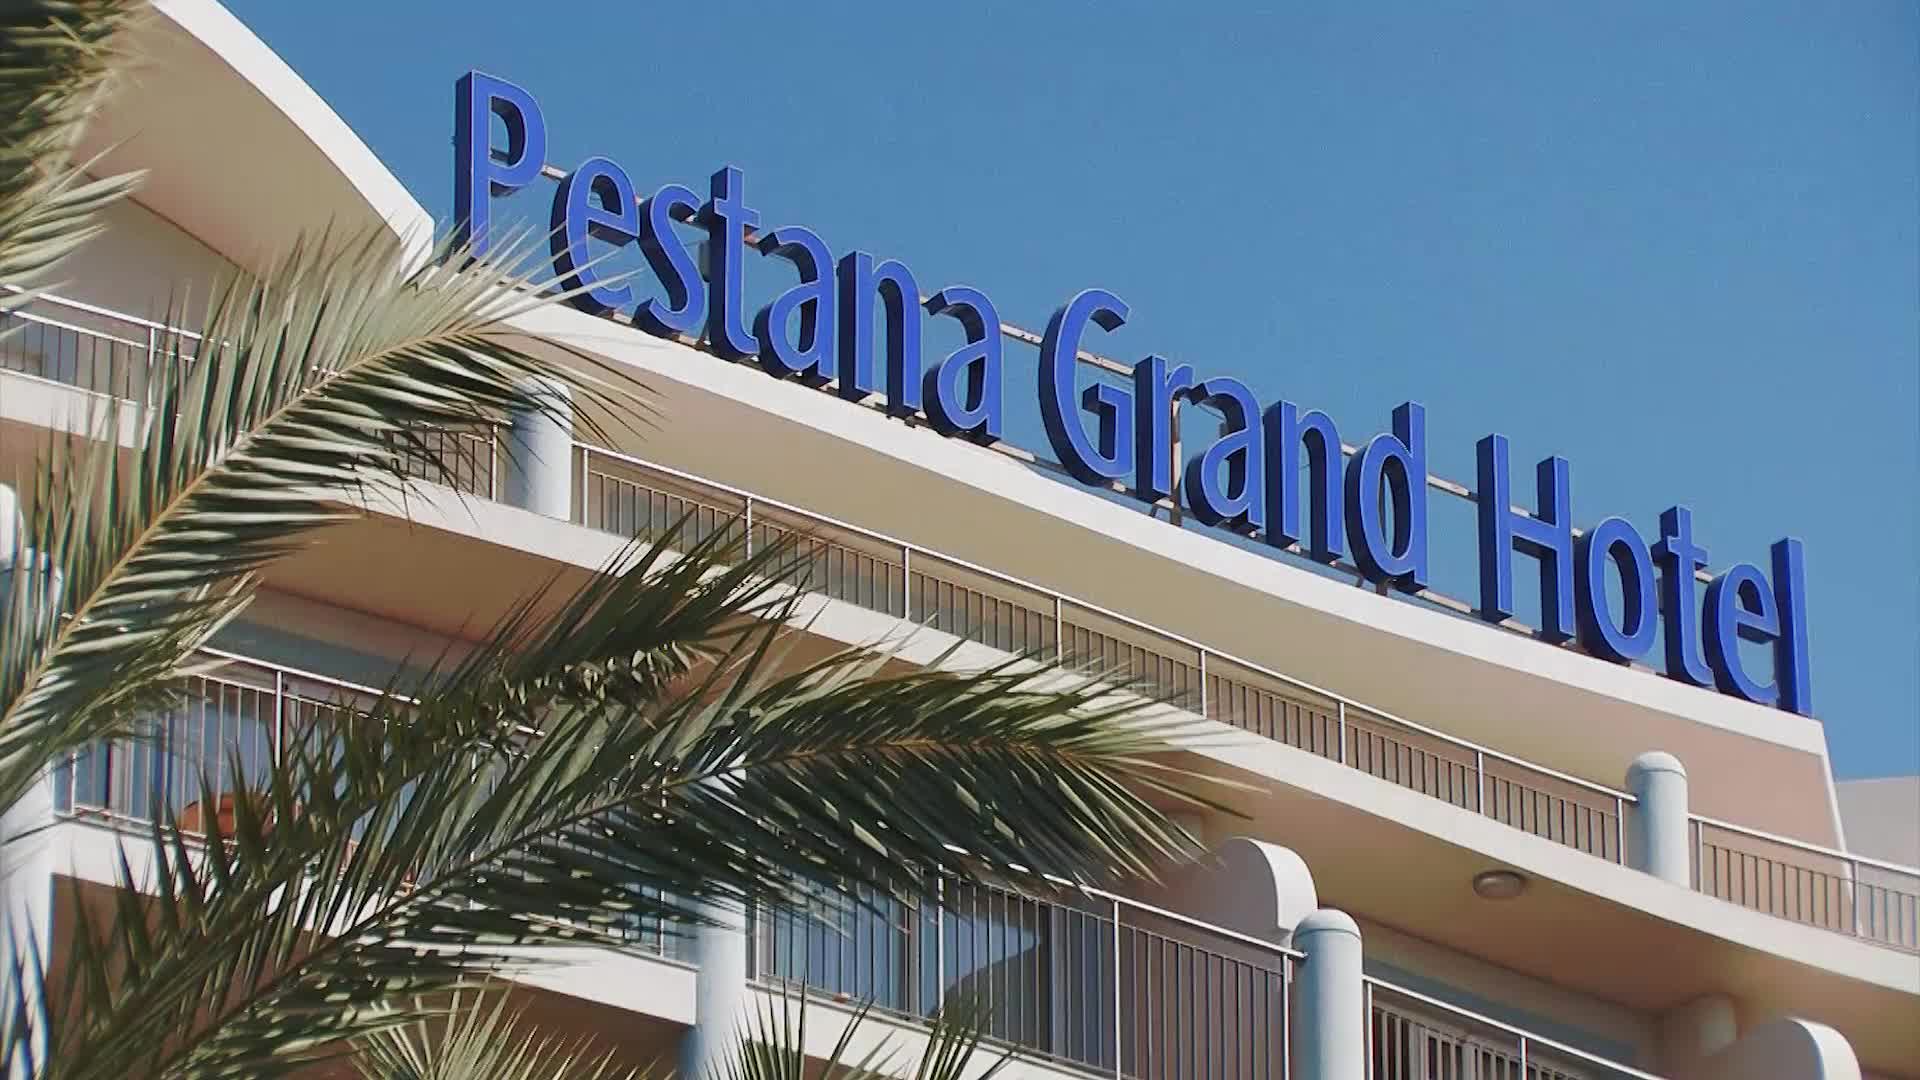 Pestana Grand Ocean Resort